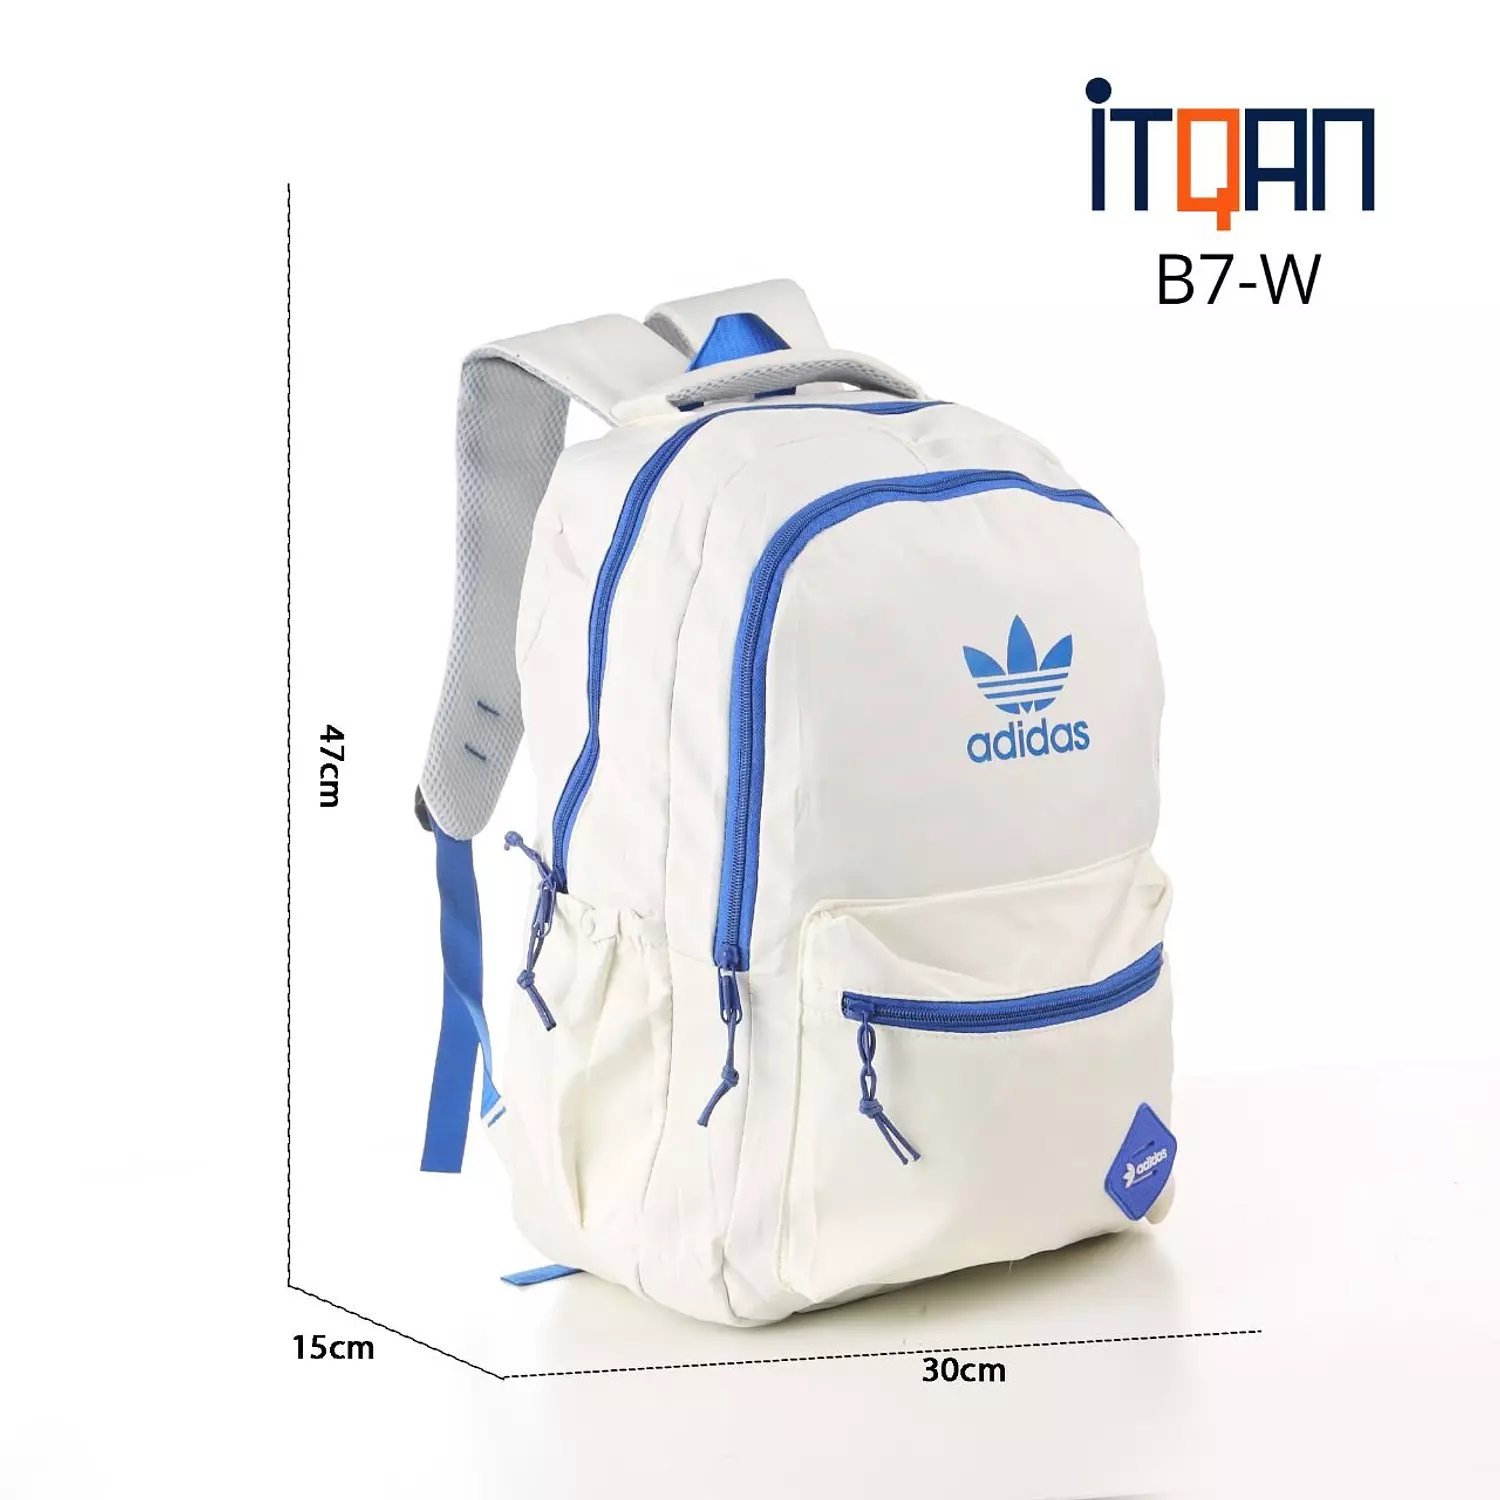 Adidas Waterproof Bag 1